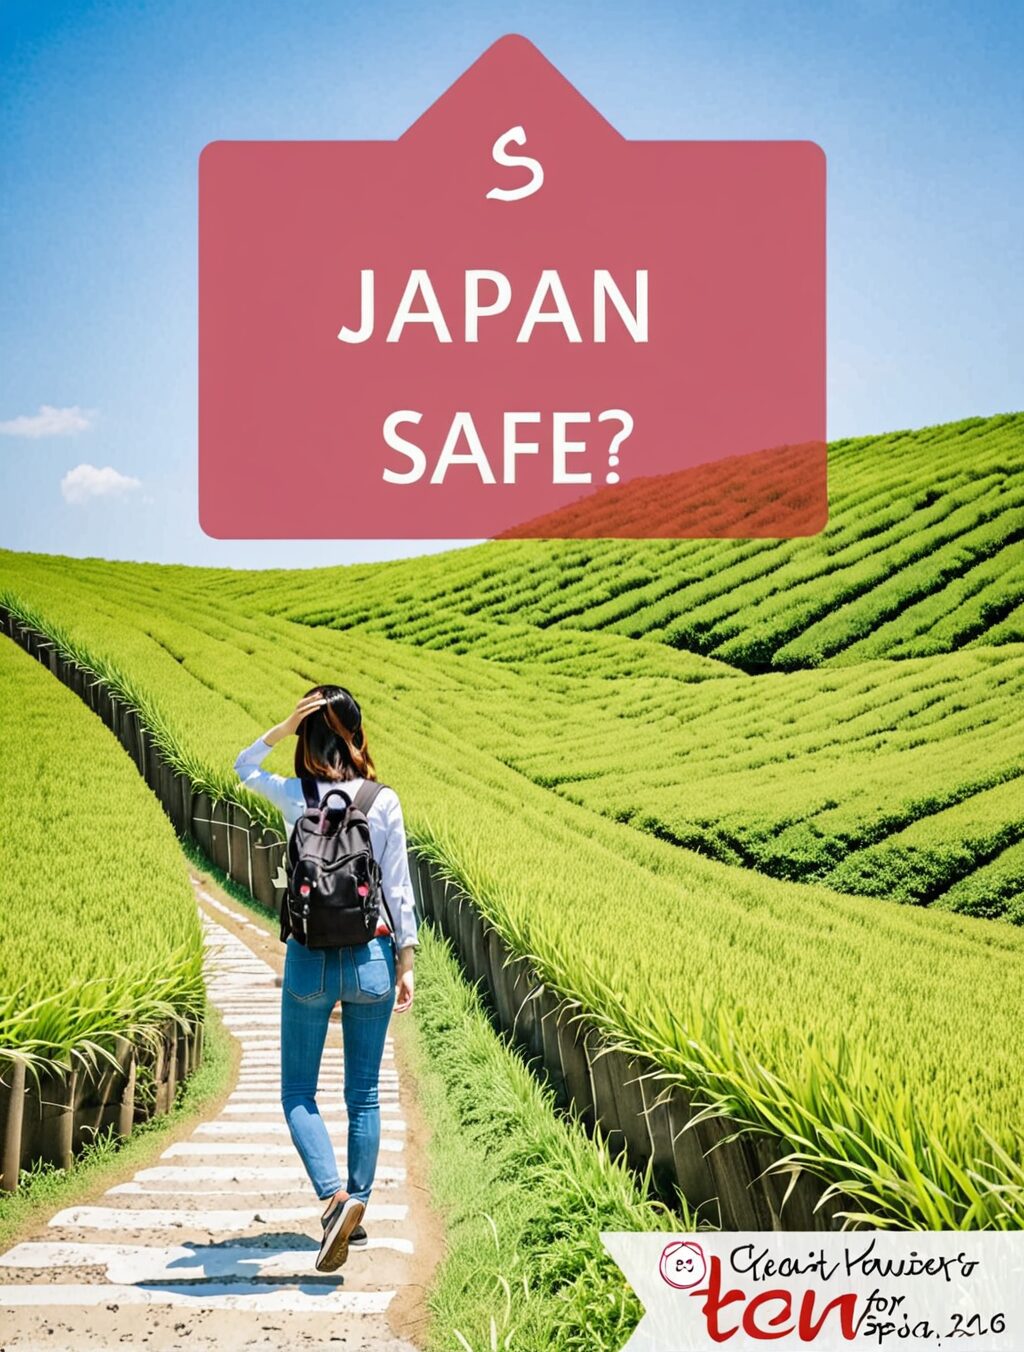 is japan safe for female travellers reddit